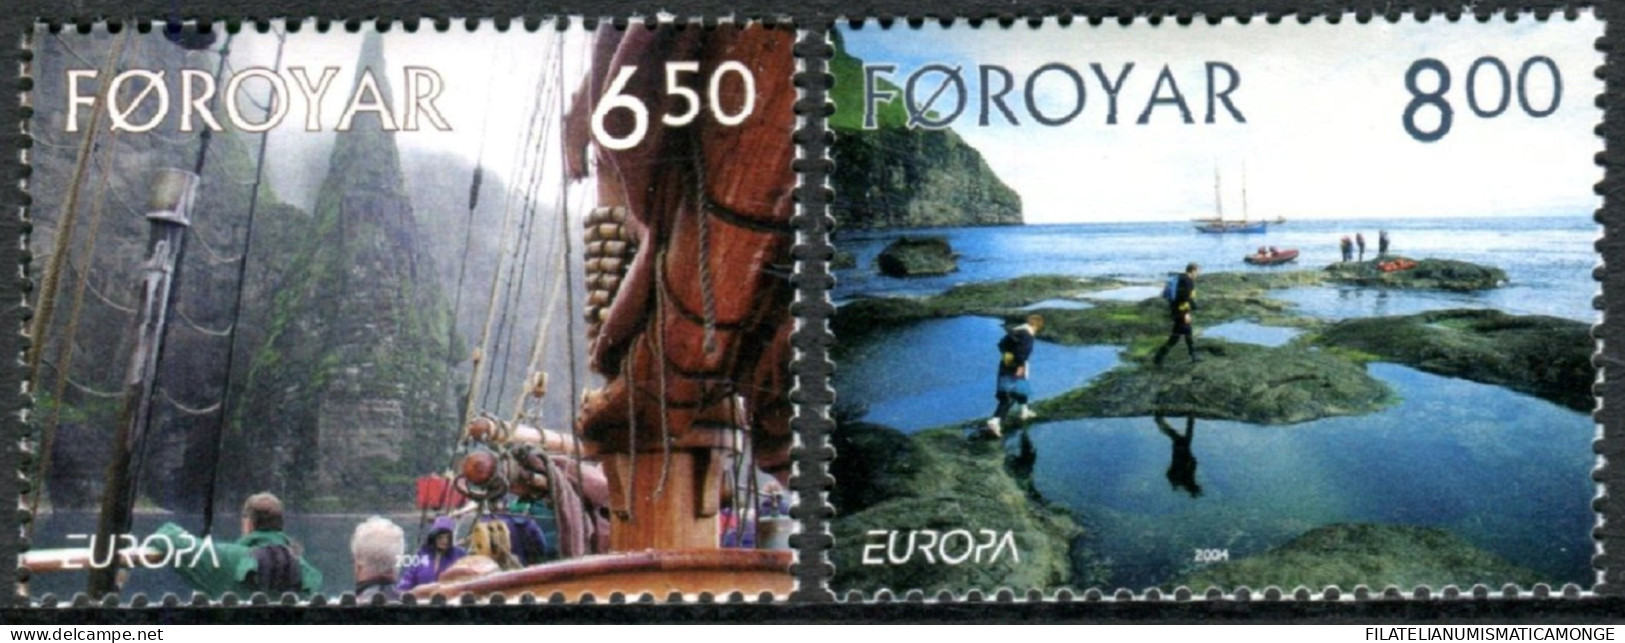  Tema Europa -    CEPT  Feroe 2004. Las Vacaciónes (2 Sellos) - Nº 493/494      - Färöer Inseln